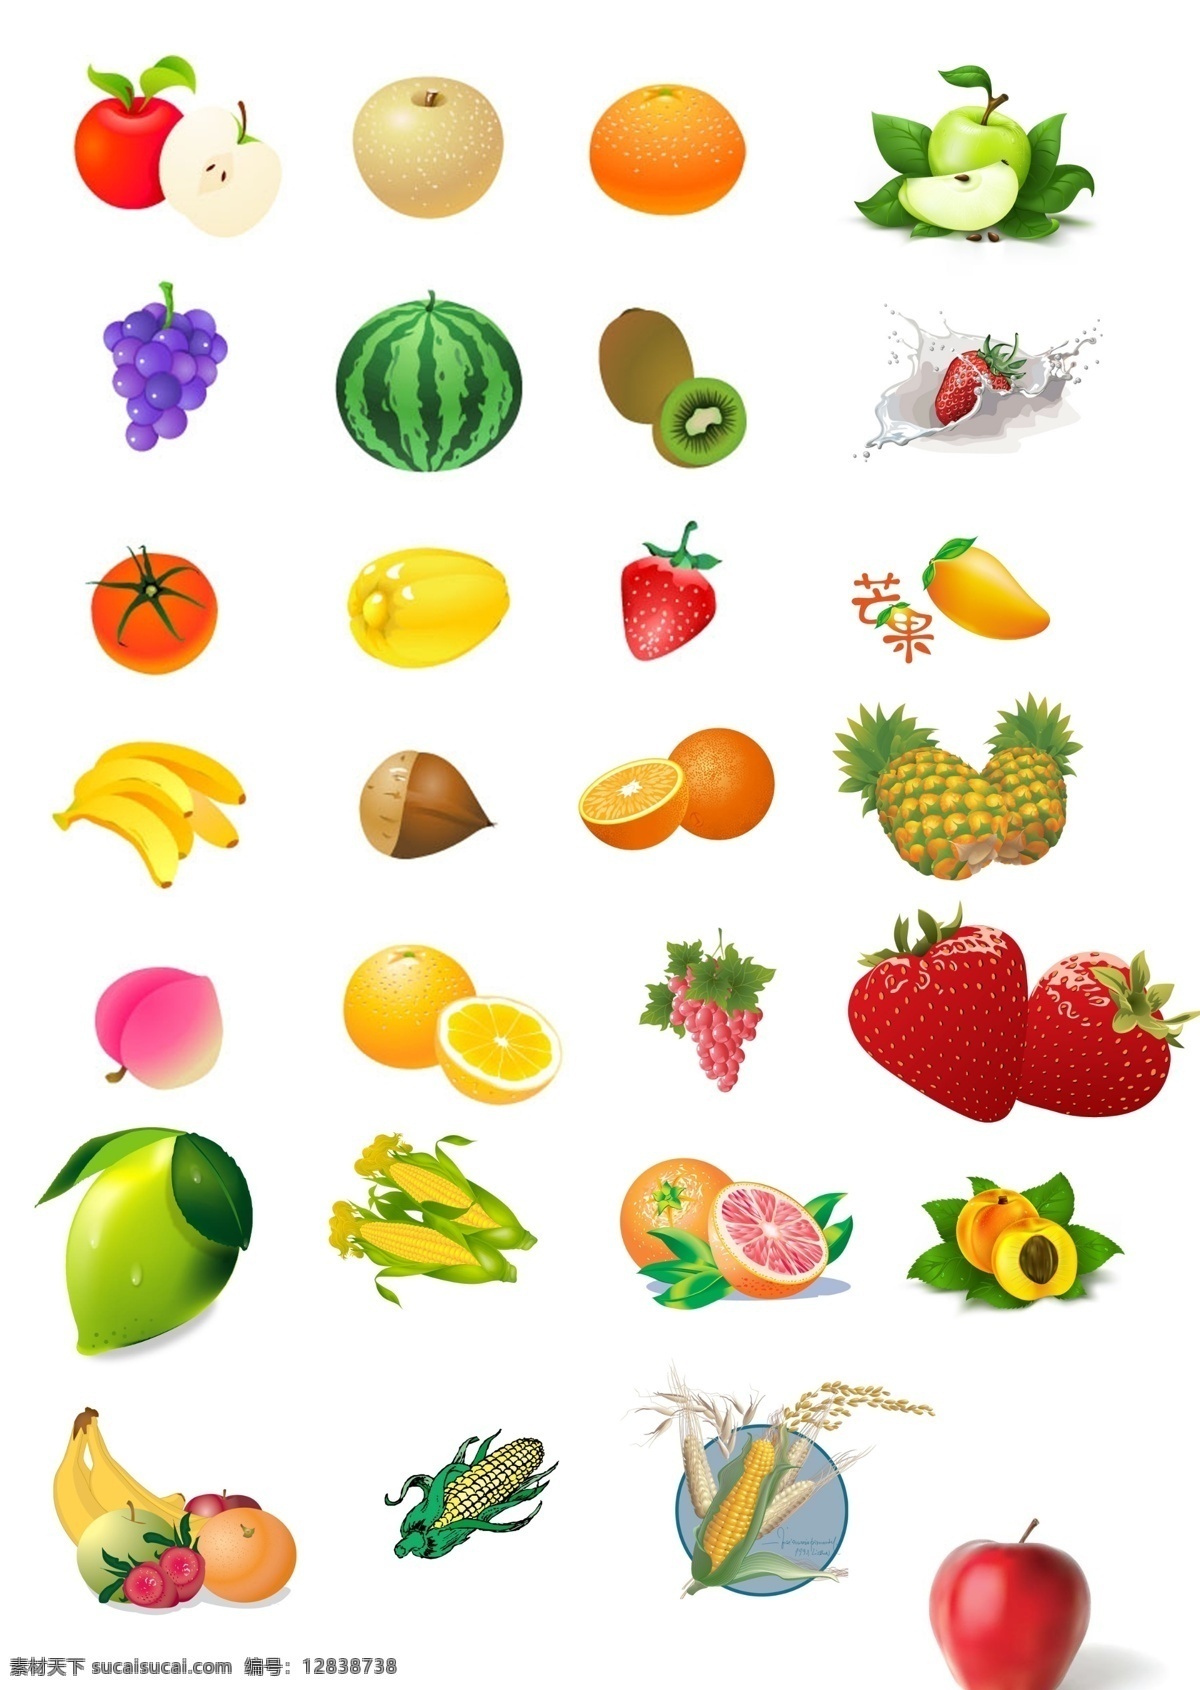 水果 图 菠萝 草莓 橙子 苹果 水果图 西瓜 香蕉 模板下载 玉米 源文件 psd源文件 餐饮素材